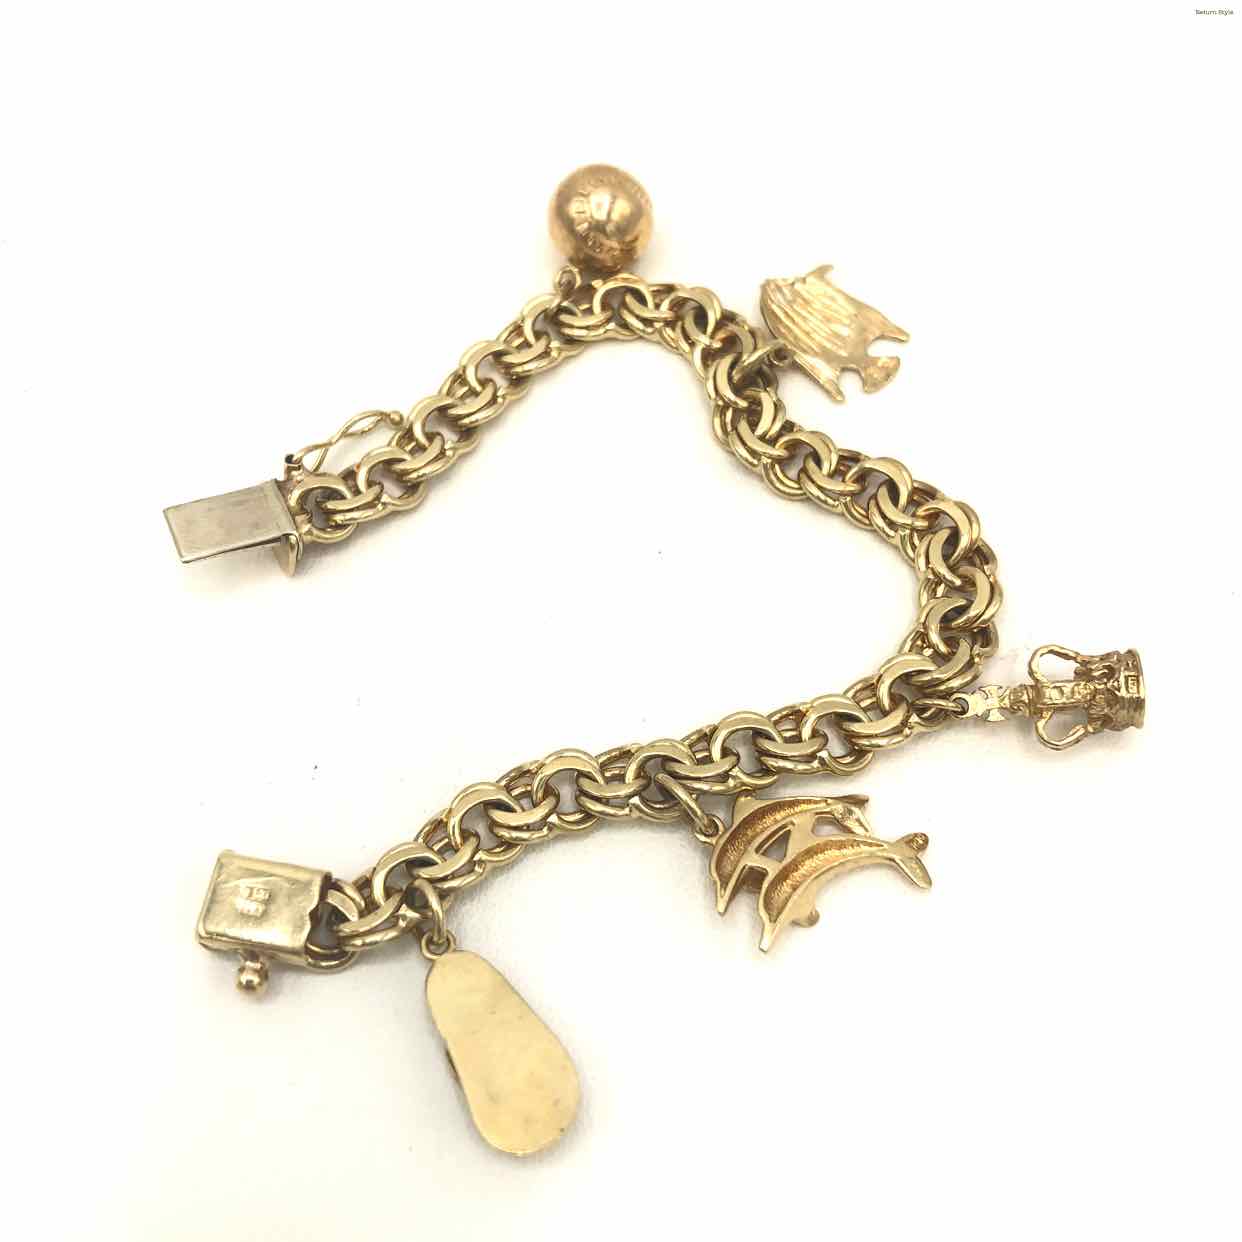 Lot 35: 14K Gold Charm Bracelet, 86.2 grams | Case Auctions